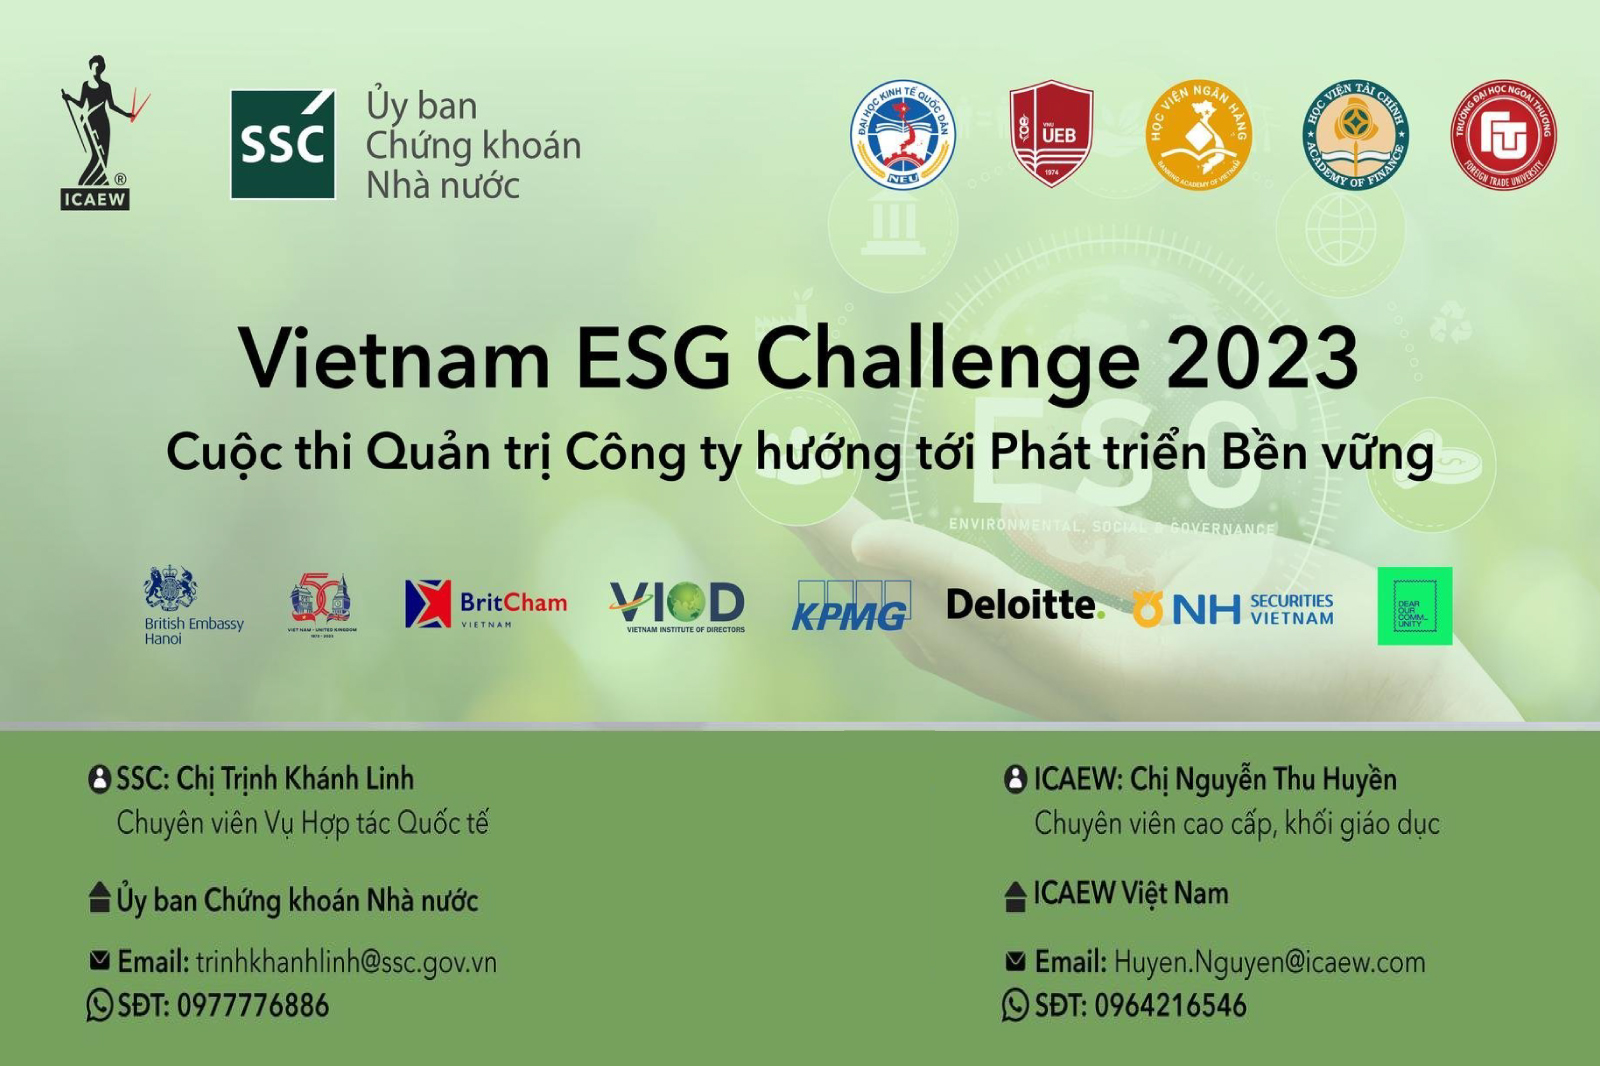 Cuộc thi “Quản trị công ty hướng tới phát triển bền vững” - Vietnam ESG Challenge chính thức mở cổng đăng ký